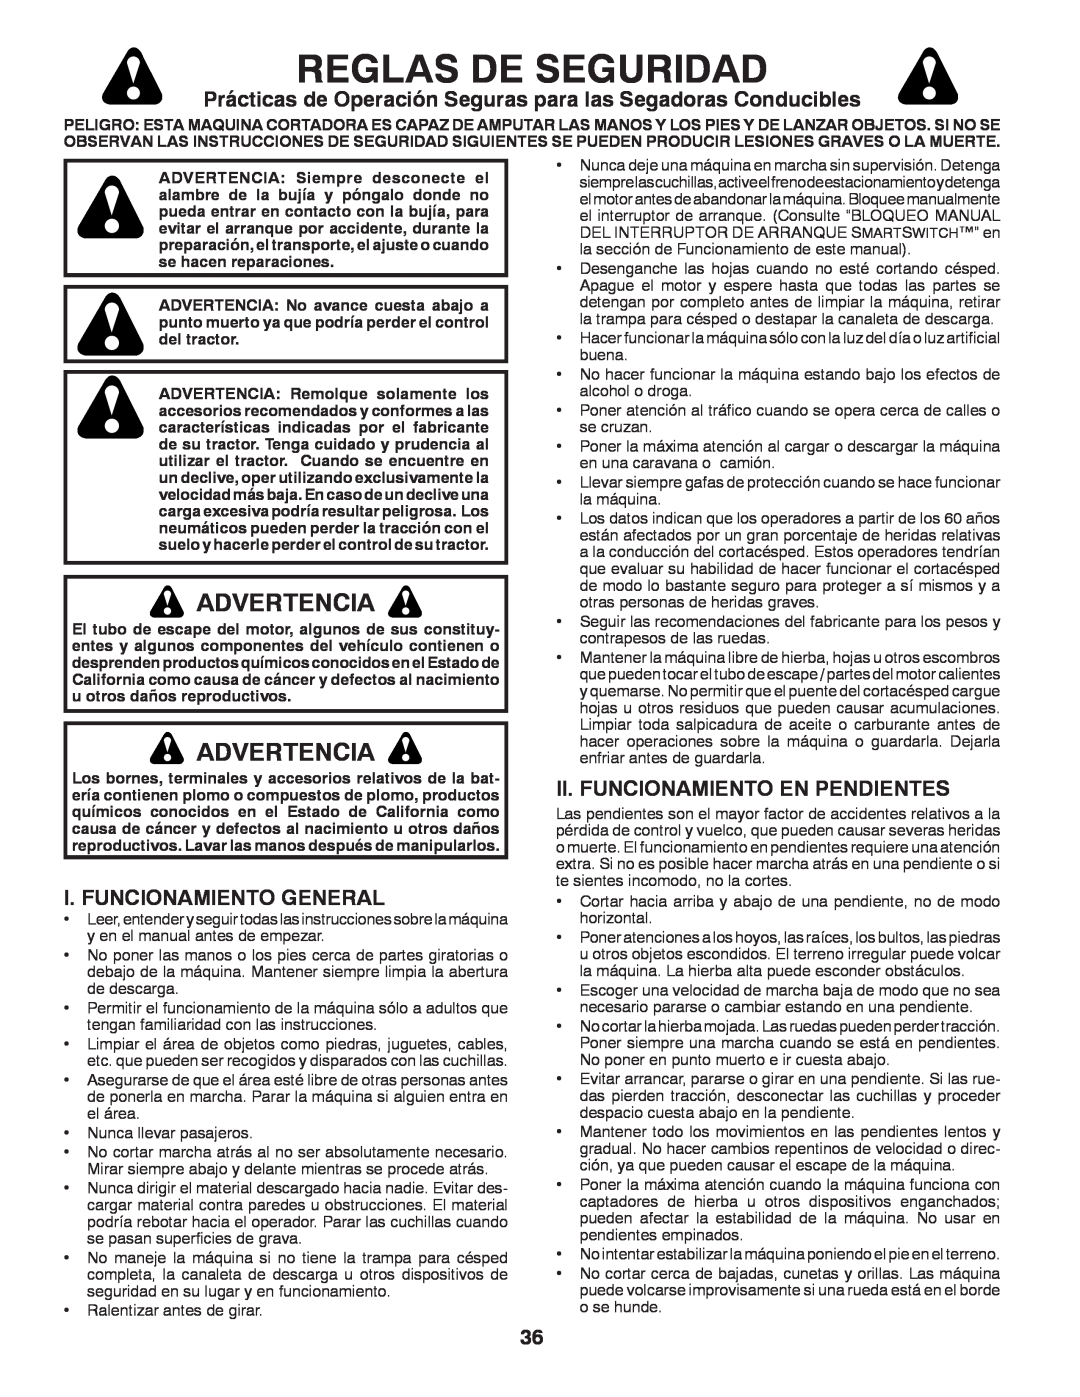 Husqvarna GT48XLSi warranty Reglas De Seguridad, Advertencia, I. Funcionamiento General, Ii. Funcionamiento En Pendientes 